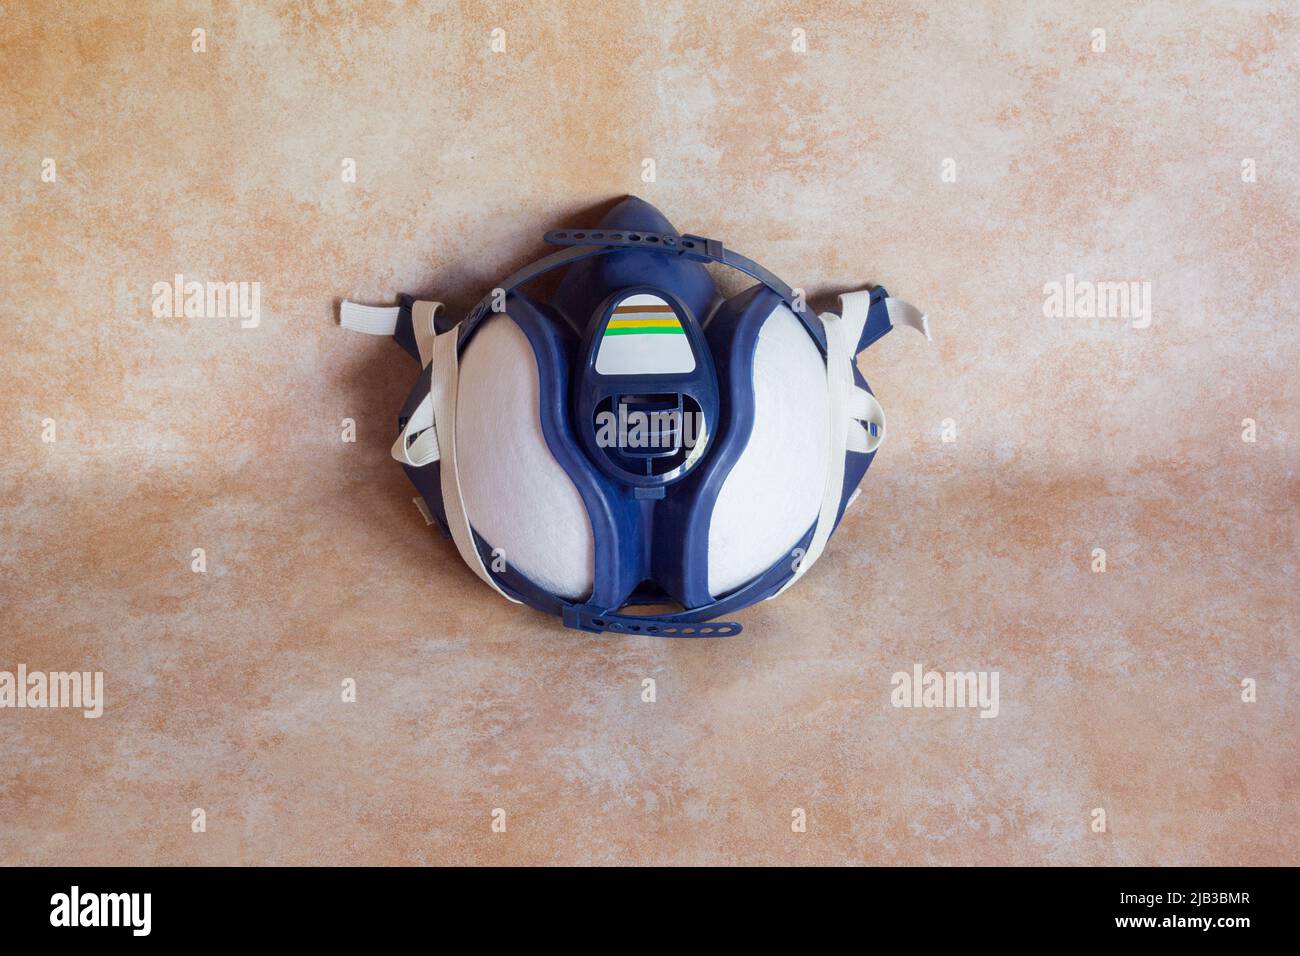 Prise de vue en grand angle d'un demi-masque avec filtres sur un arrière-plan studio. Équipement de protection et industrie. Banque D'Images